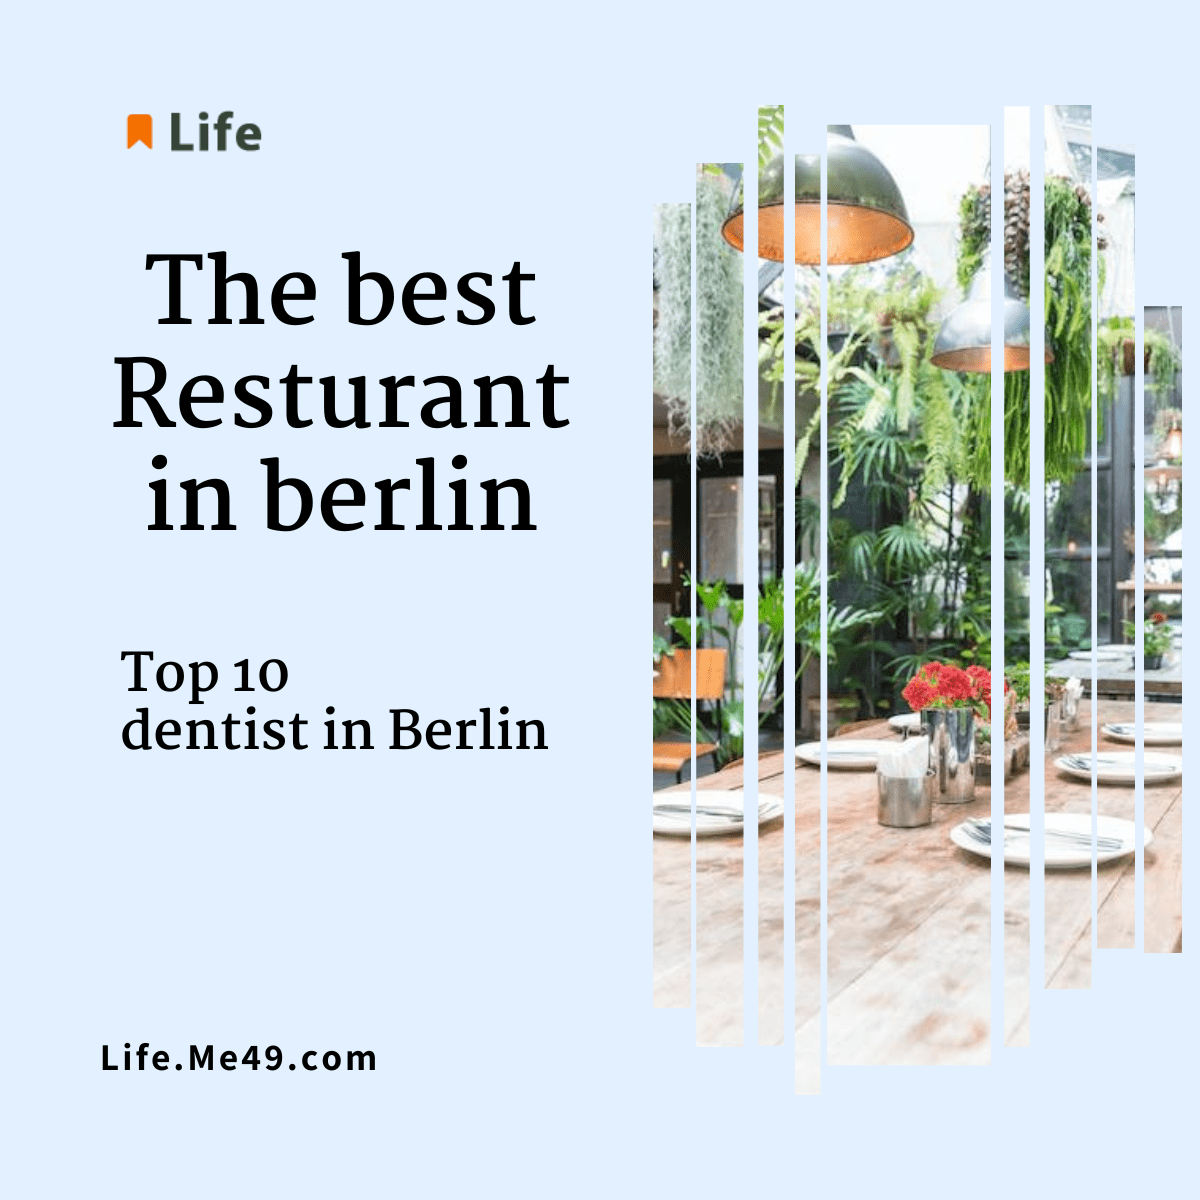 The Best Restaurant in Berlin